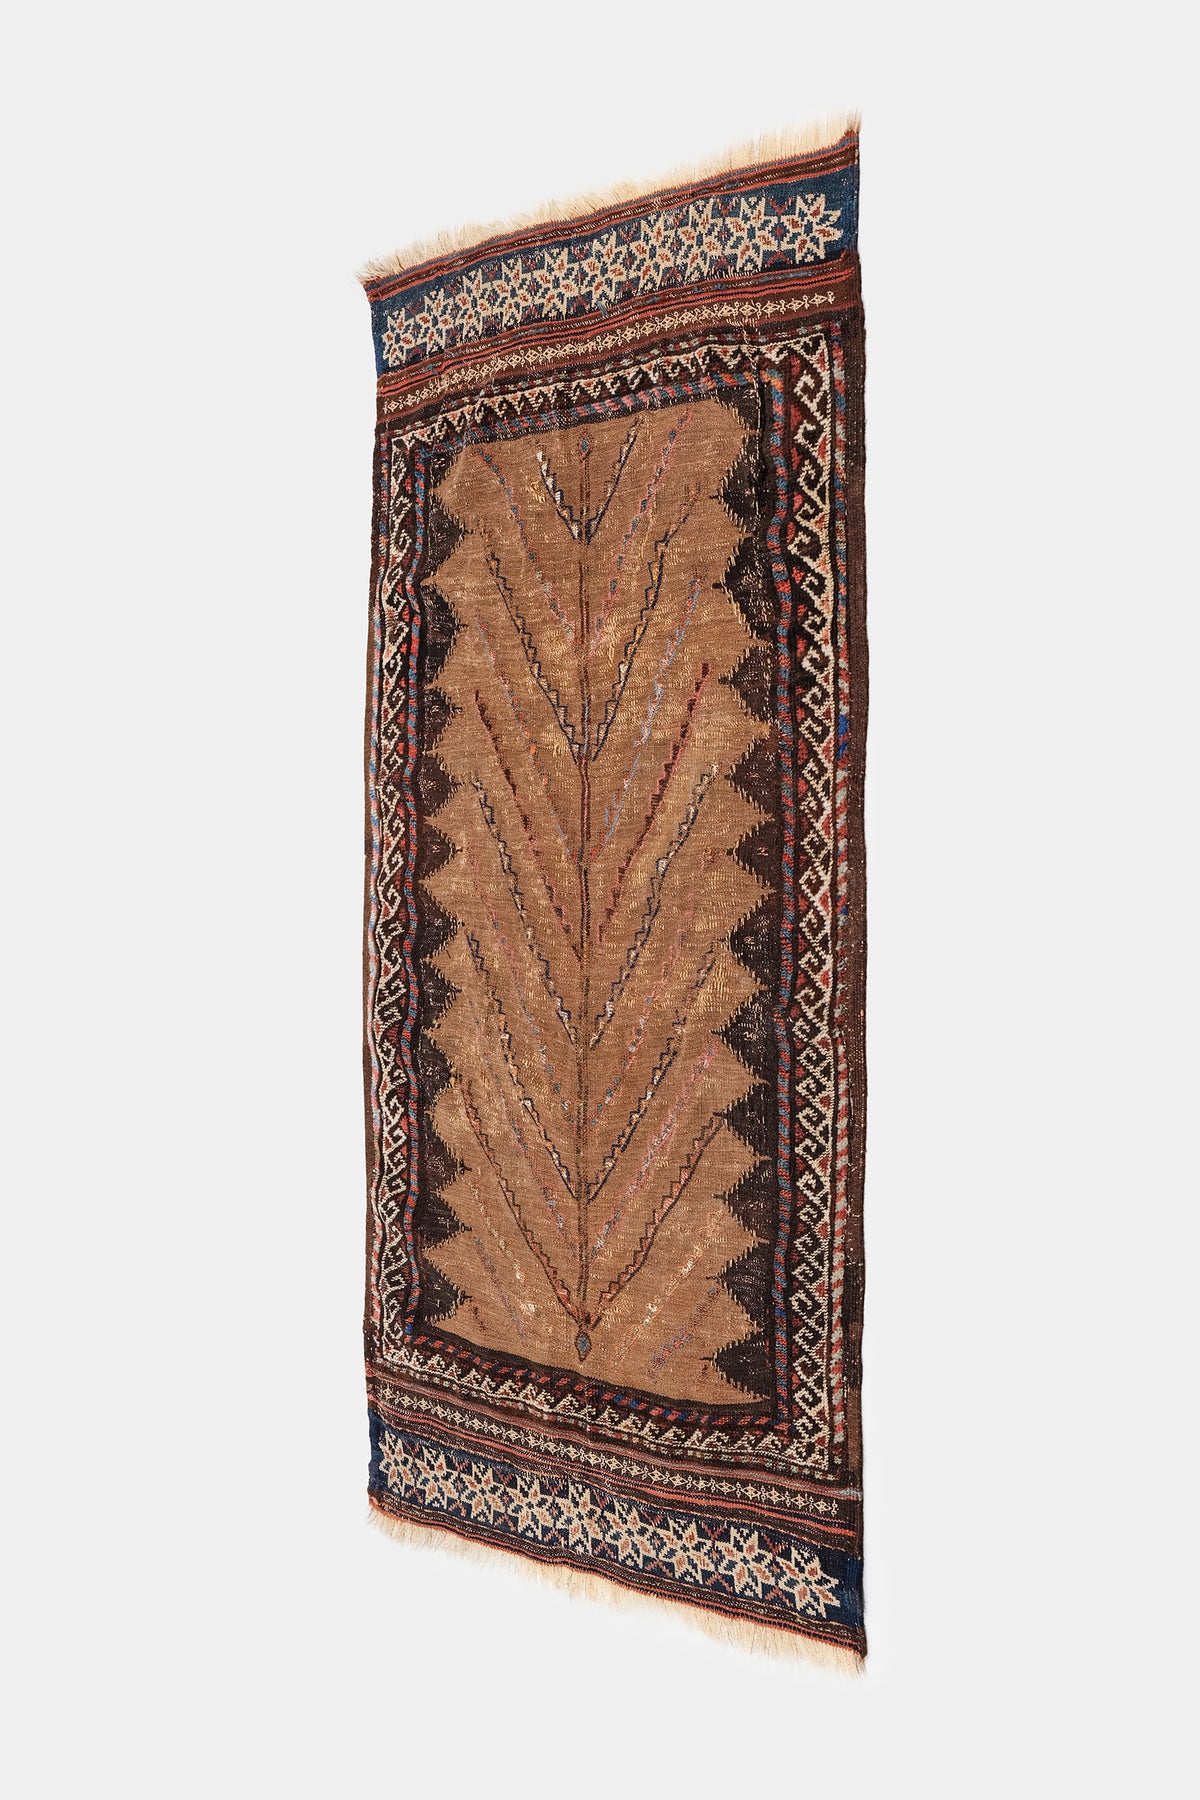 Teppich, Beluchi Sistani, Persien, 40er